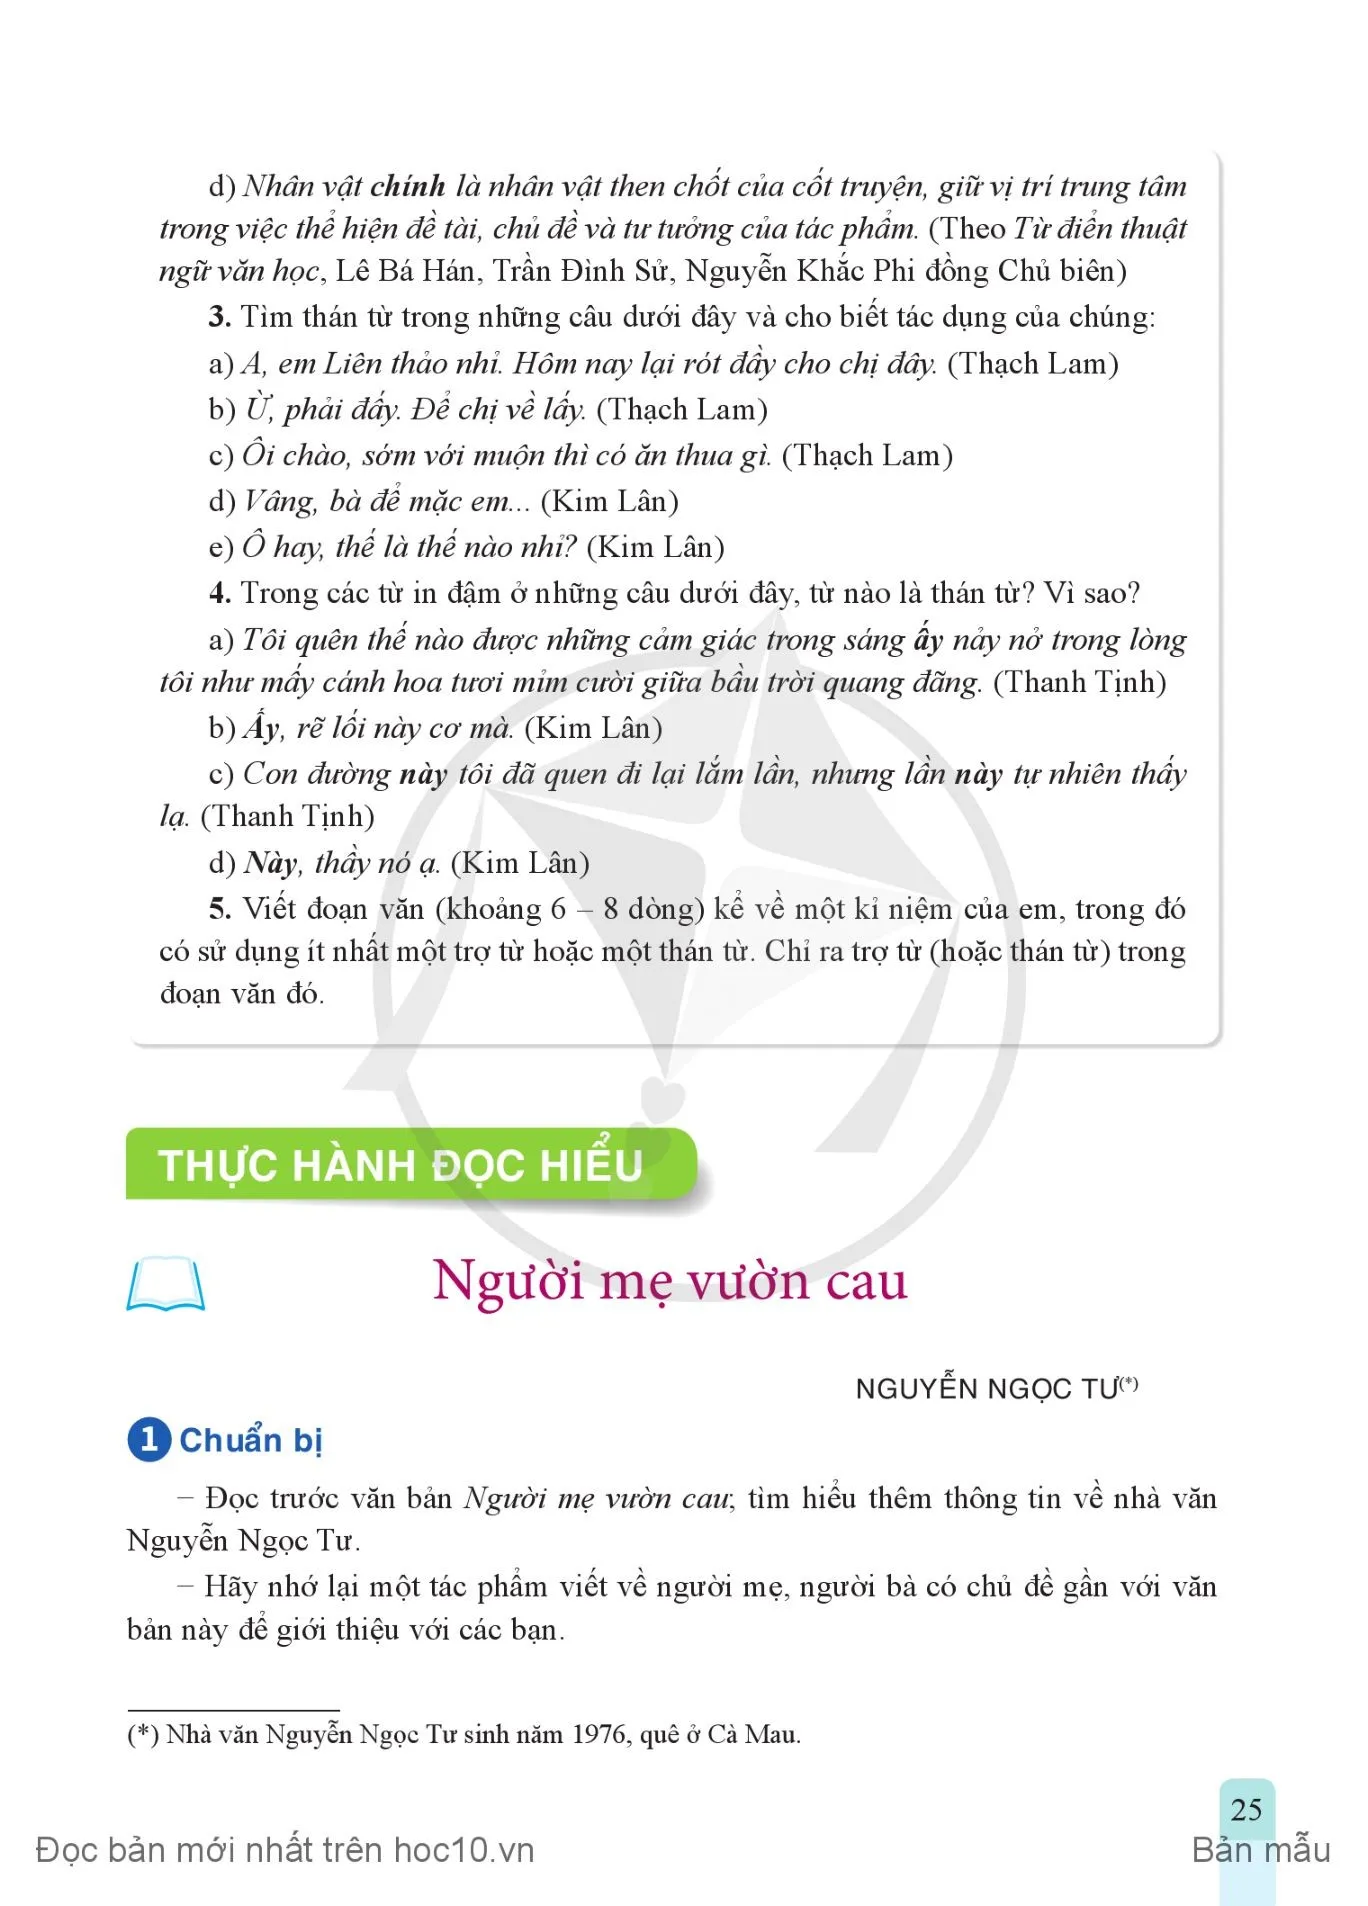 • Thực hành tiếng Việt: Trợ từ và thán từ